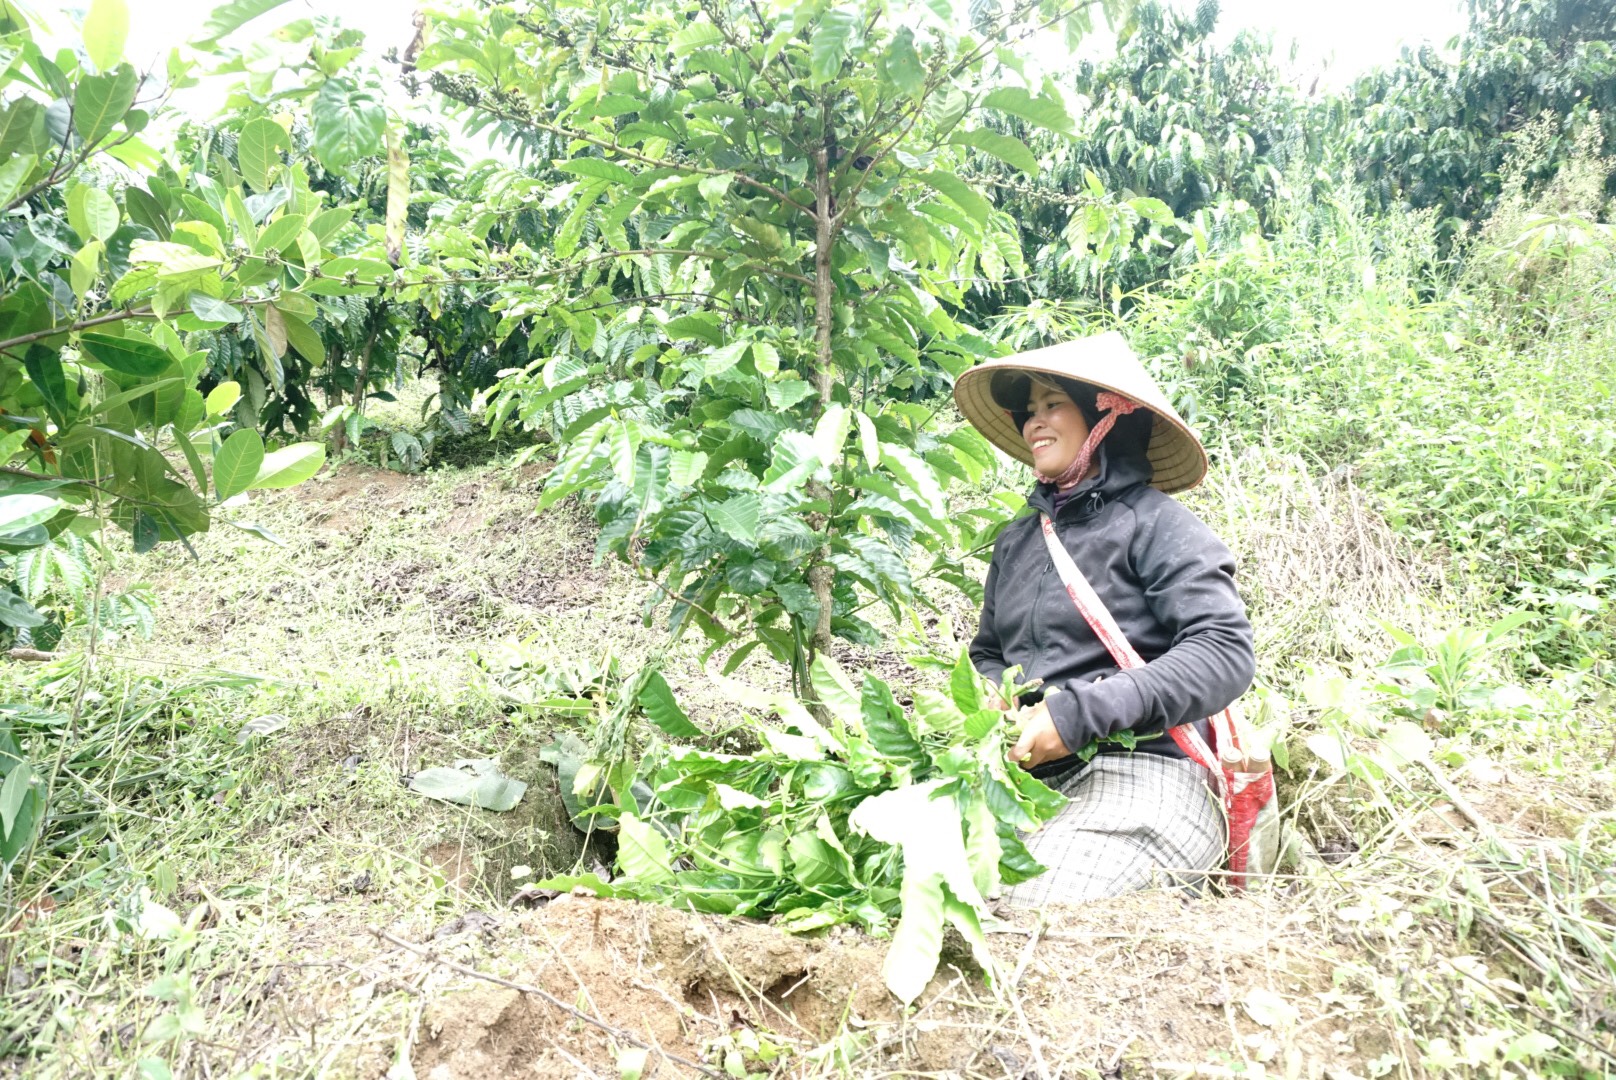 171424Nhờ chuyển đổi cơ cầu câu trồng, mỗi năm Nàng Thái thu lãi hơn 150 triệu đồng.